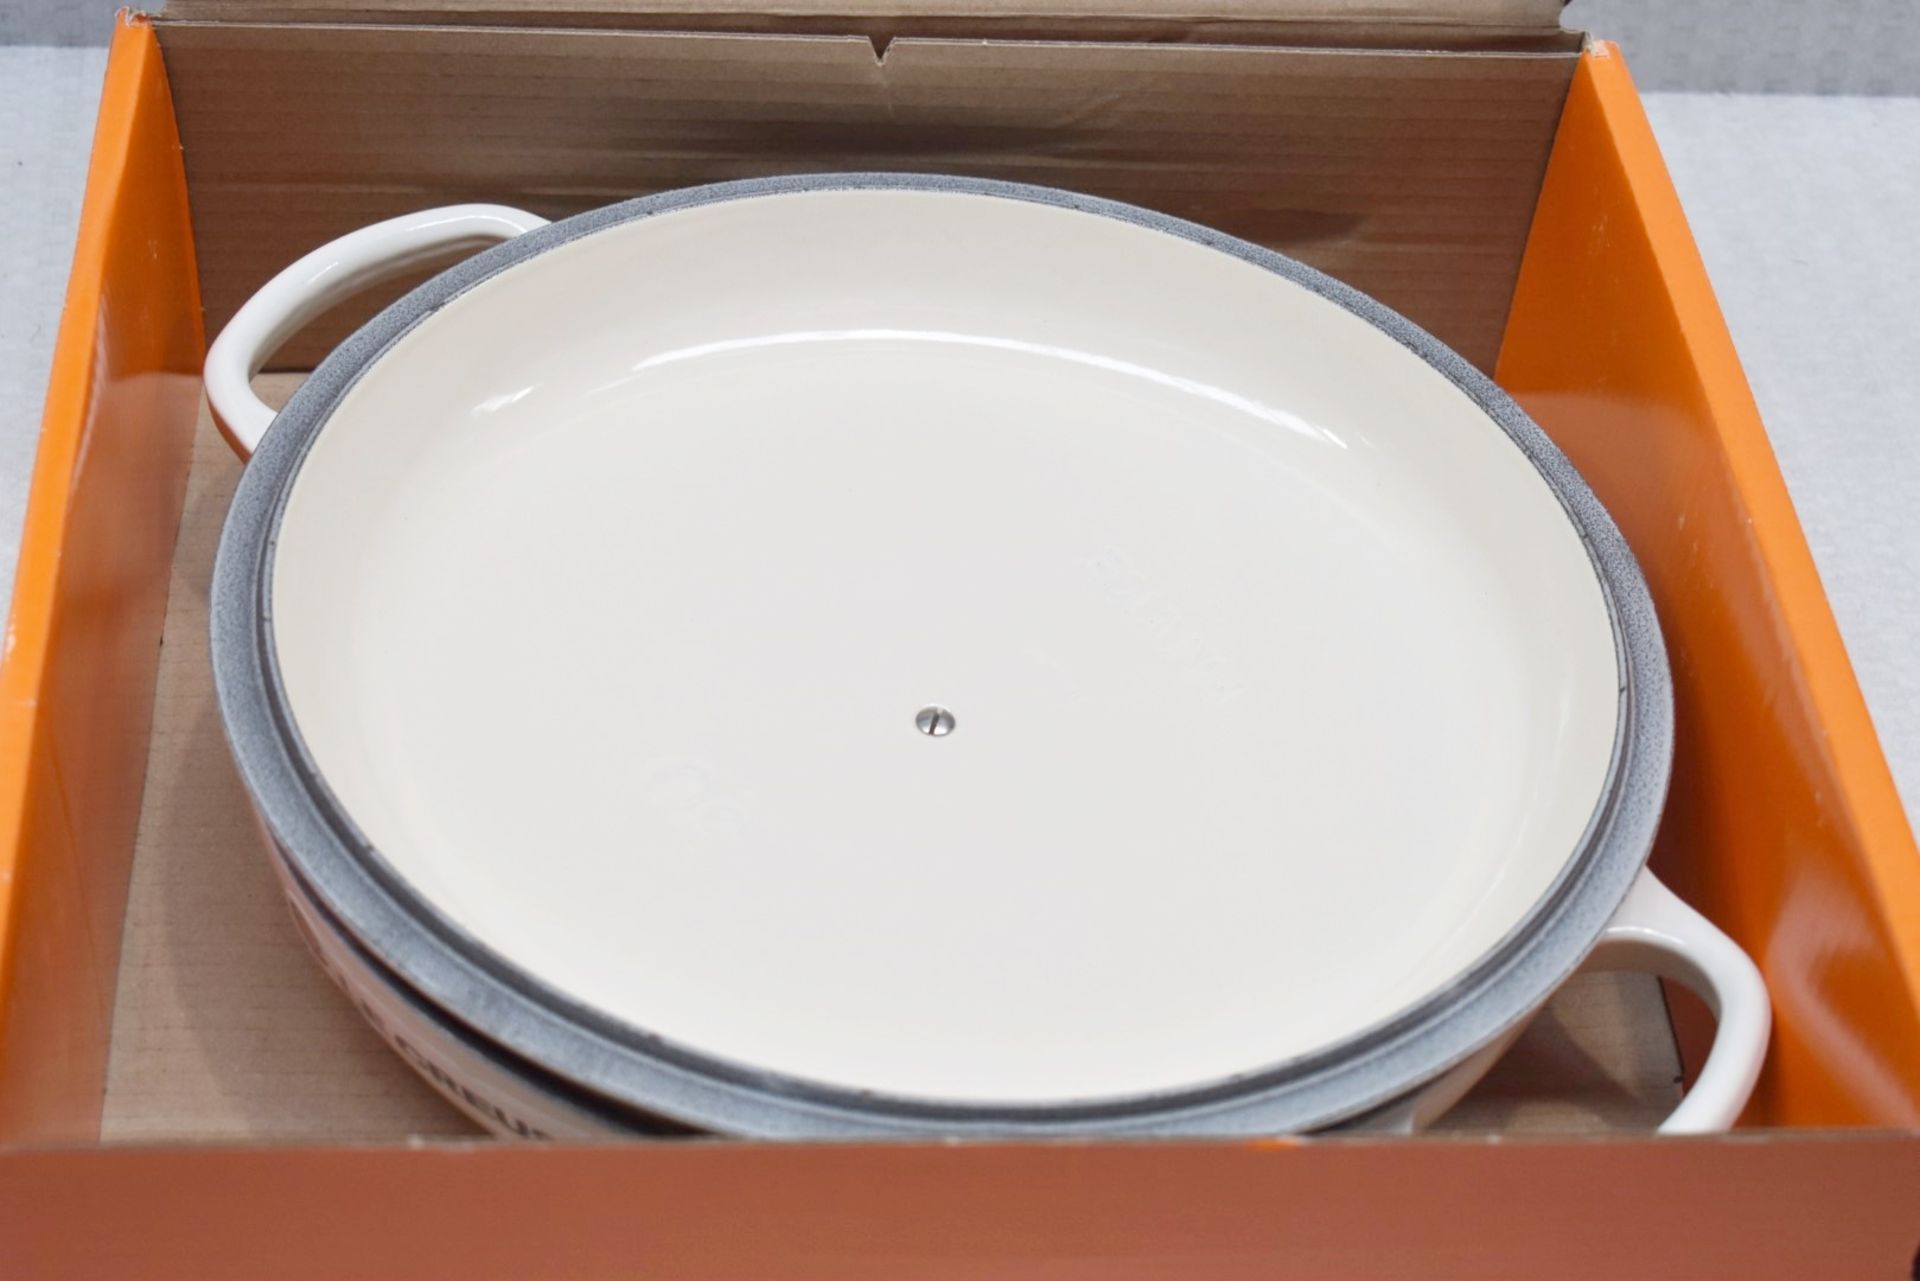 1 x LE CRESEUT Enamelled Signature Cast Iron 30cm Shallow Casserole Dish - Original RRP £270.00 - Image 5 of 13